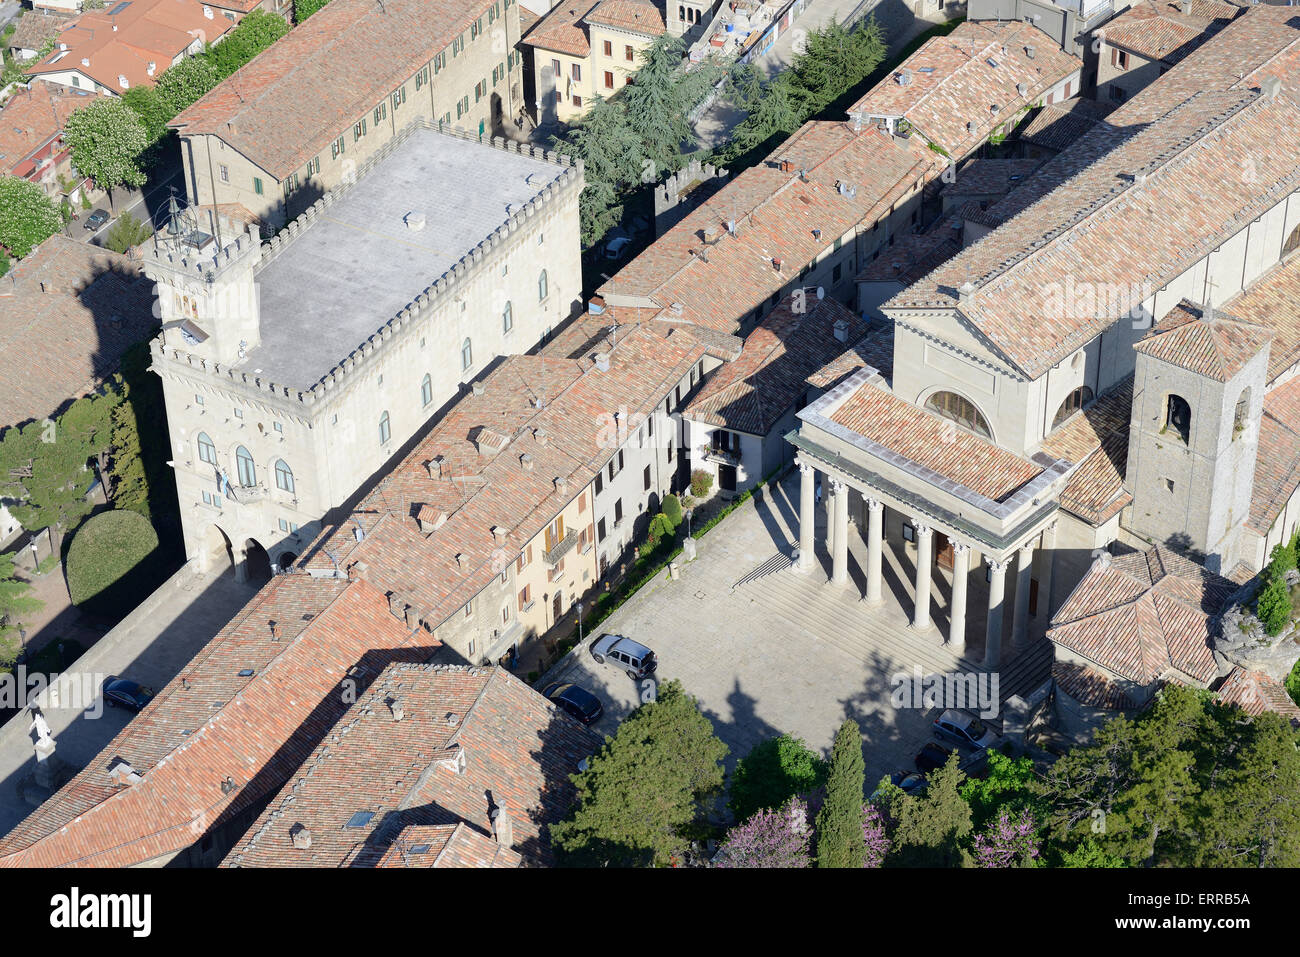 VISTA AEREA. Palazzo pubblico (edificio di sinistra - sede del governo) e Basilica di San Marinus. Città di San Marino, Repubblica di San Marino. Foto Stock